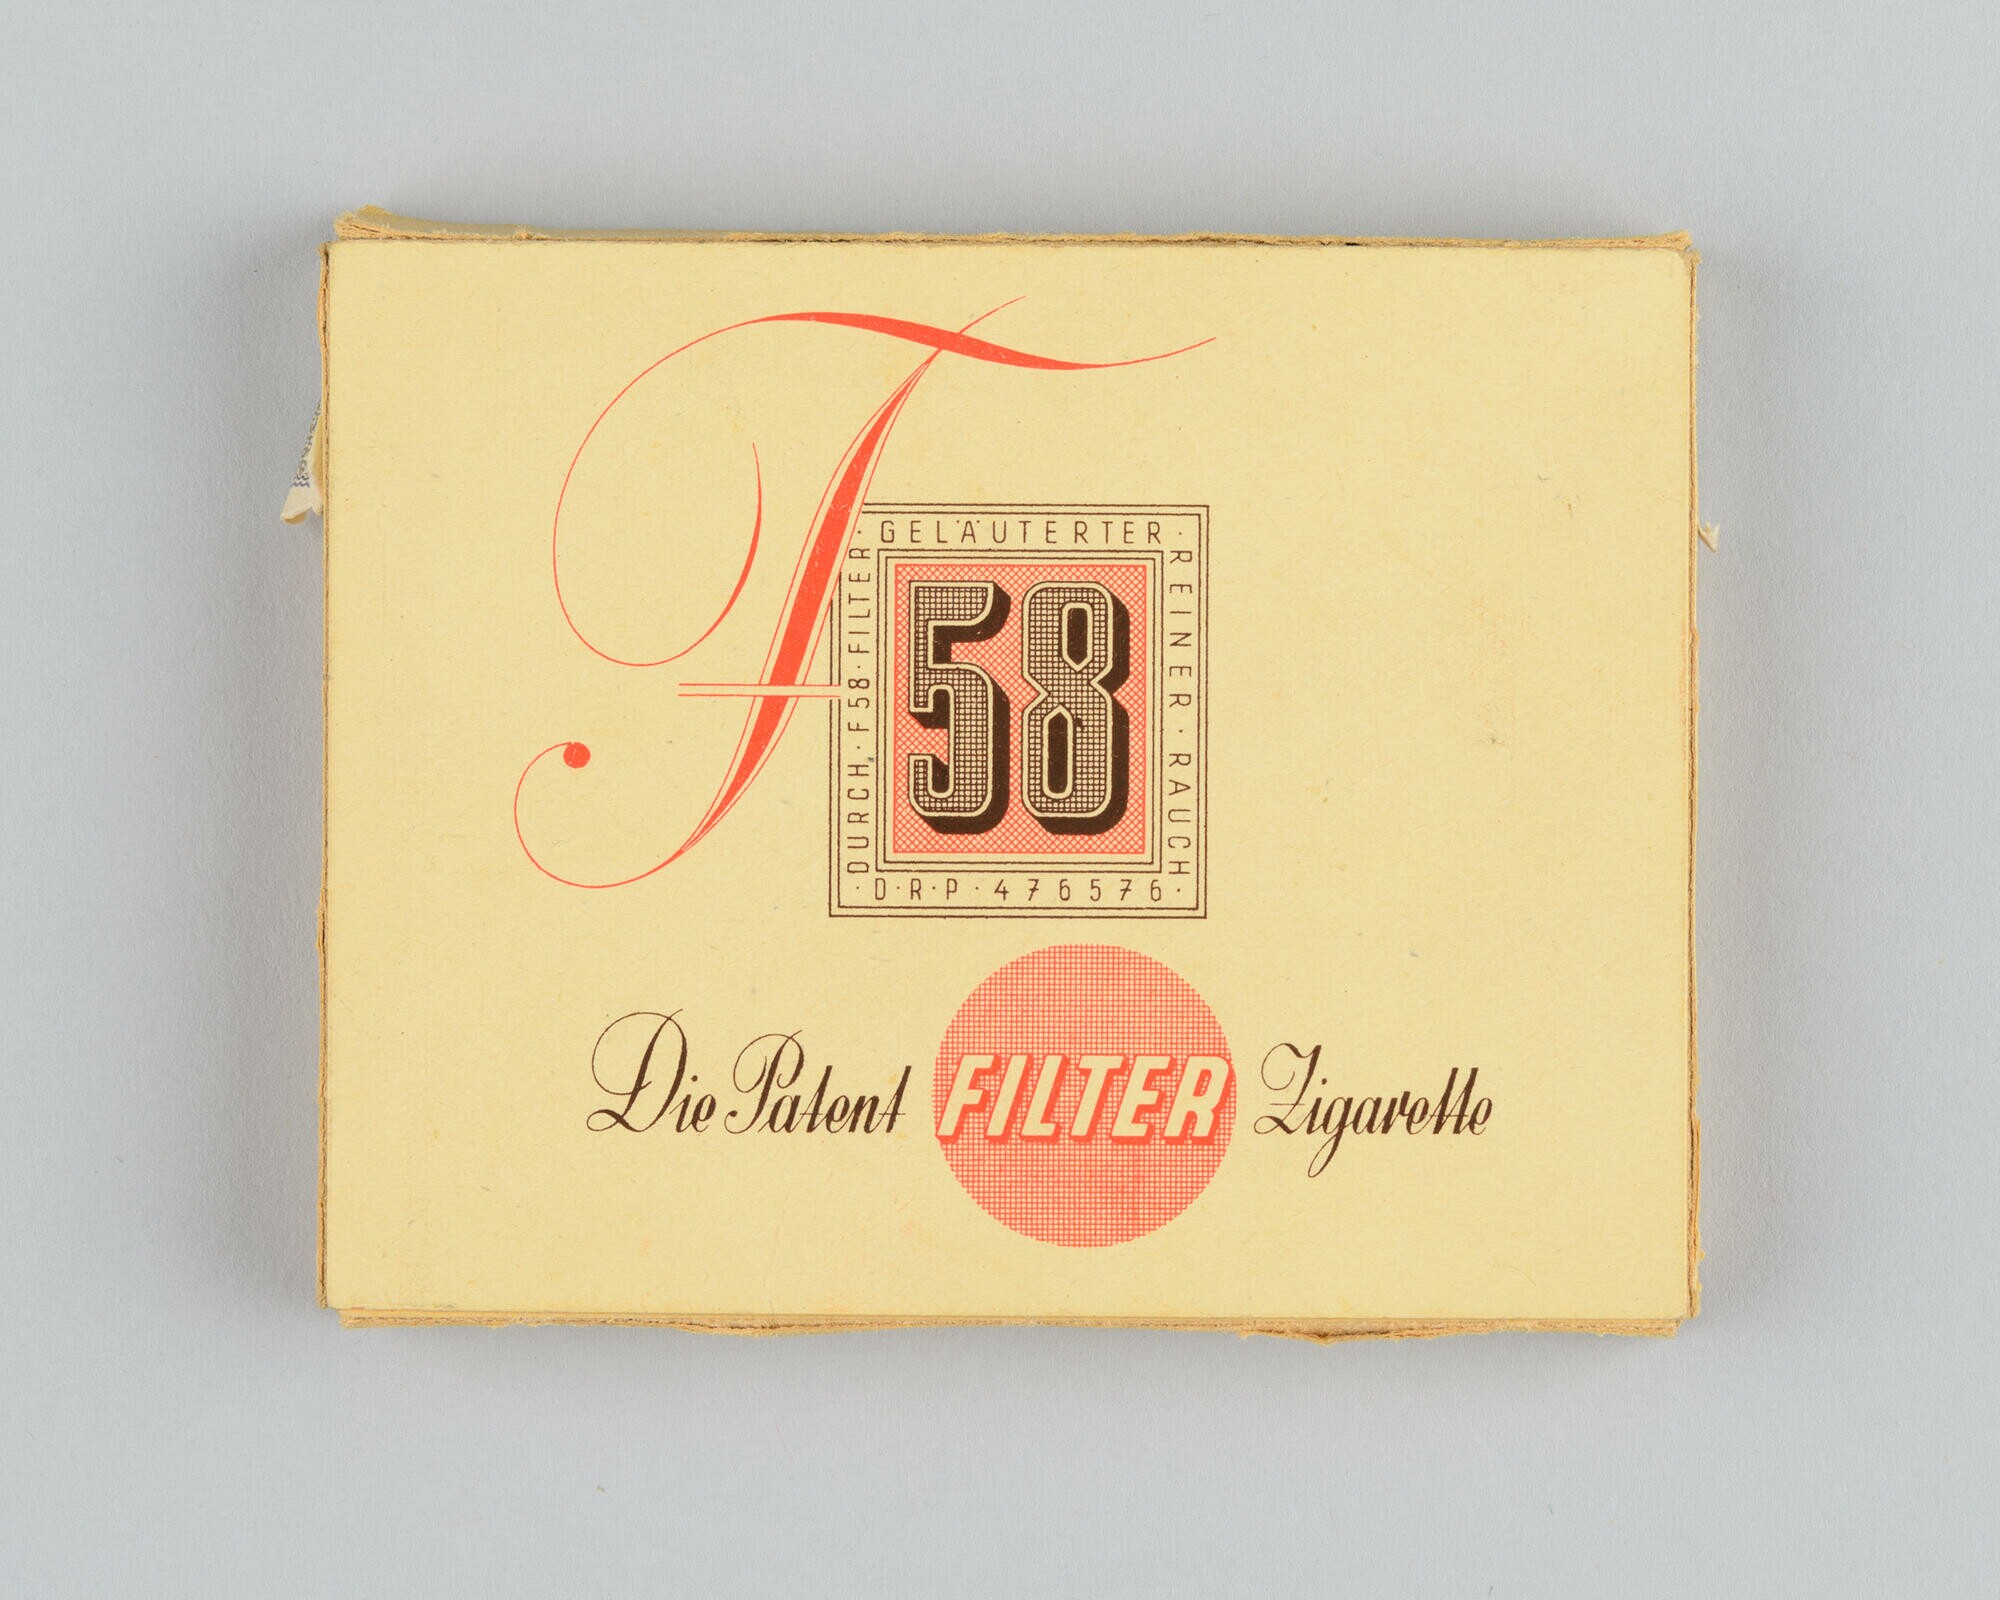 Zigarettenschachtel mit 10 Zigaretten der Marke "F 58" (Filter) (Stadtmuseum Dresden CC BY-NC-ND)